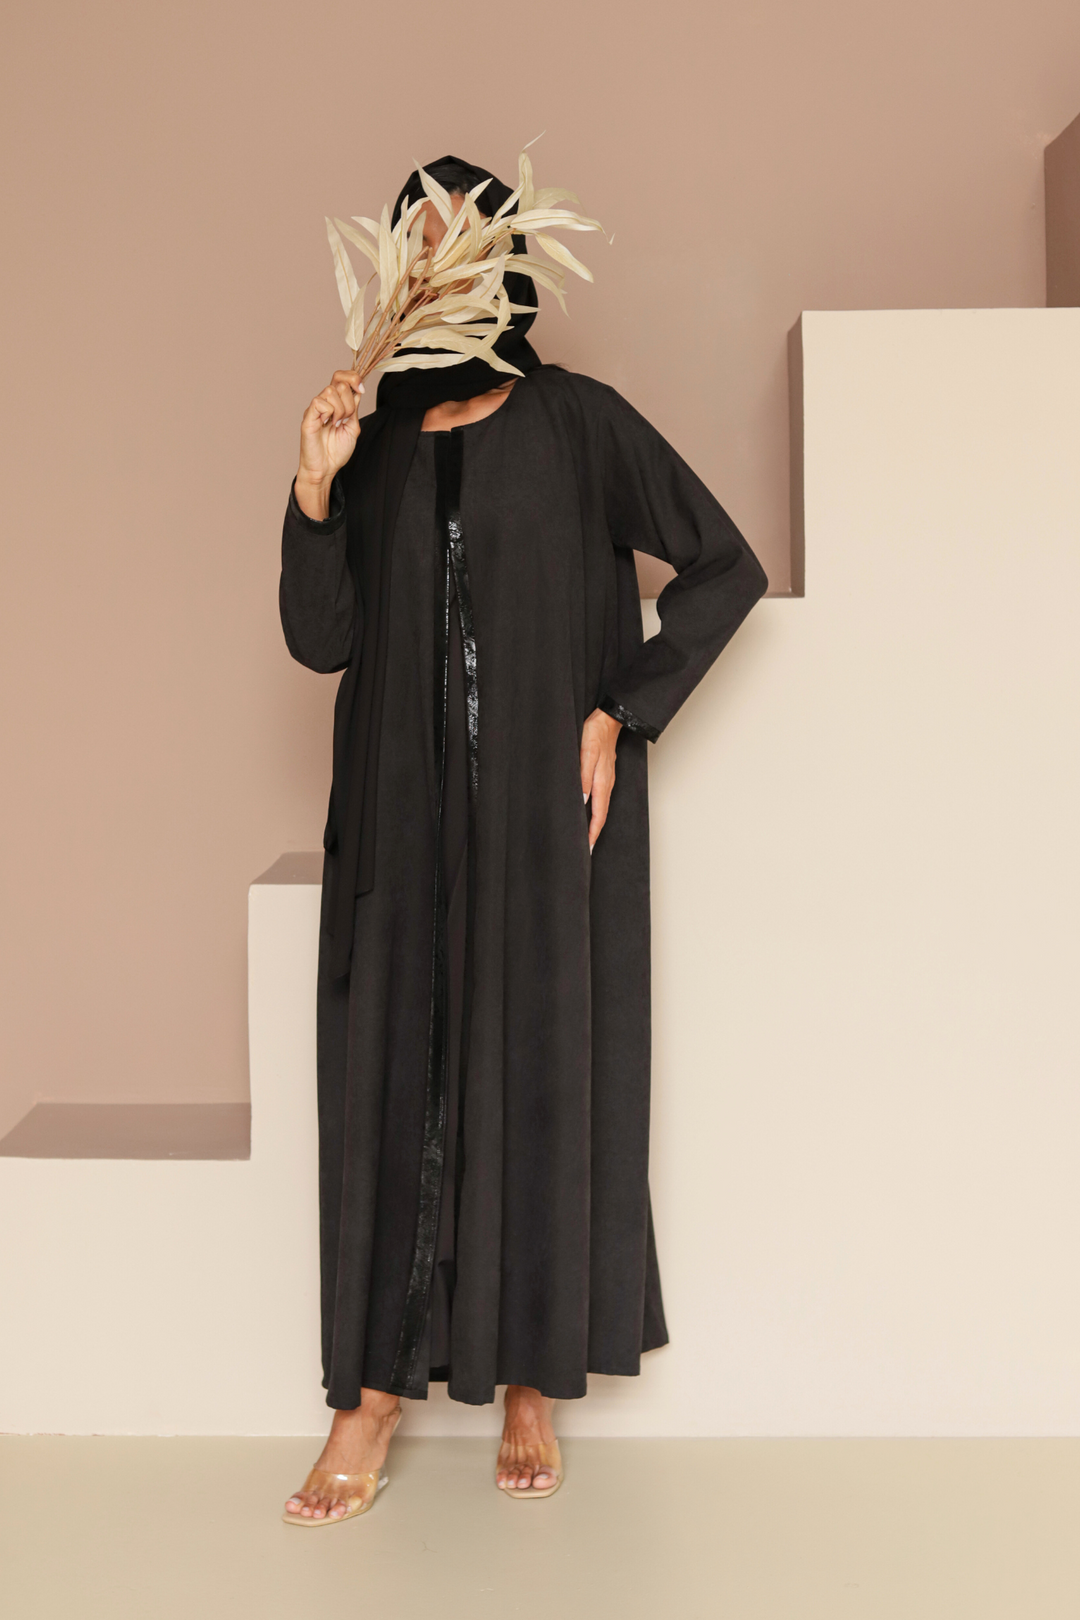 Basic Leather (Black Abaya) - Ready to Wear